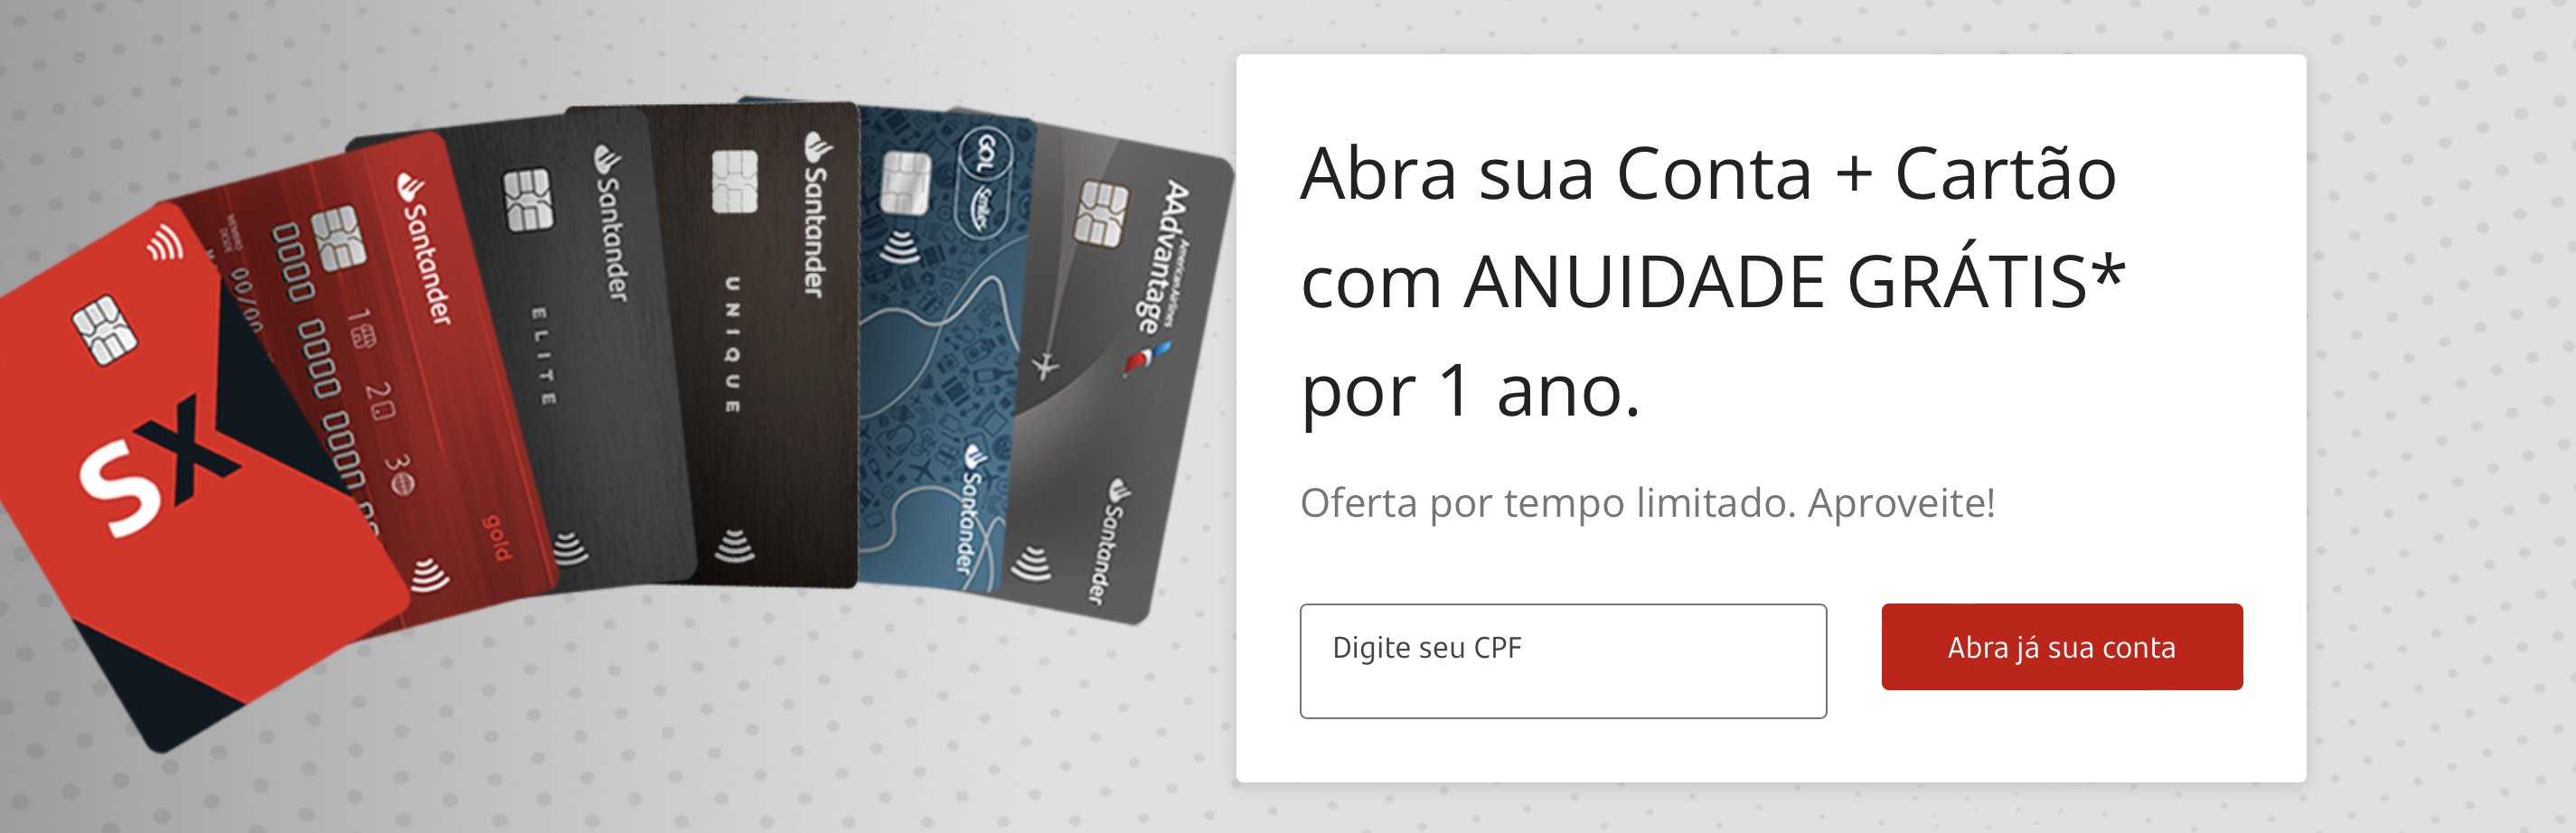 Santander isenção anuidade cartões